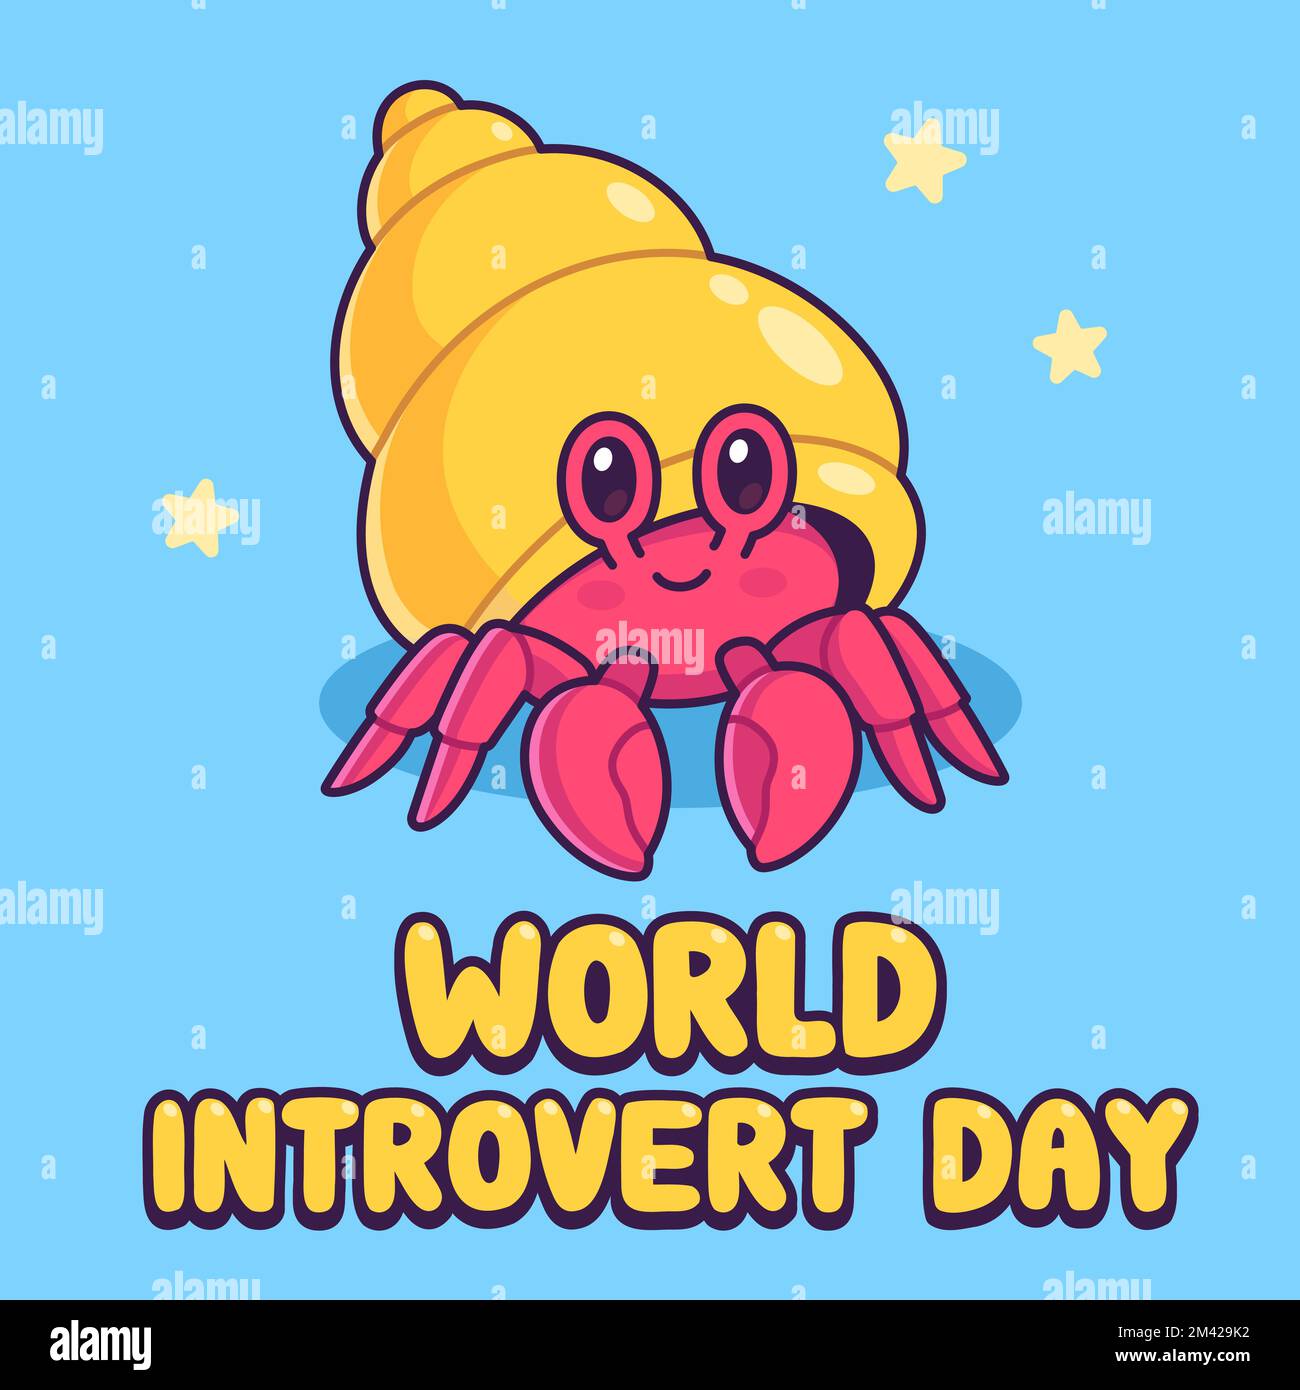 World introvert Day mignon dessin de crabe ermit. Illustration vectorielle. Illustration de Vecteur